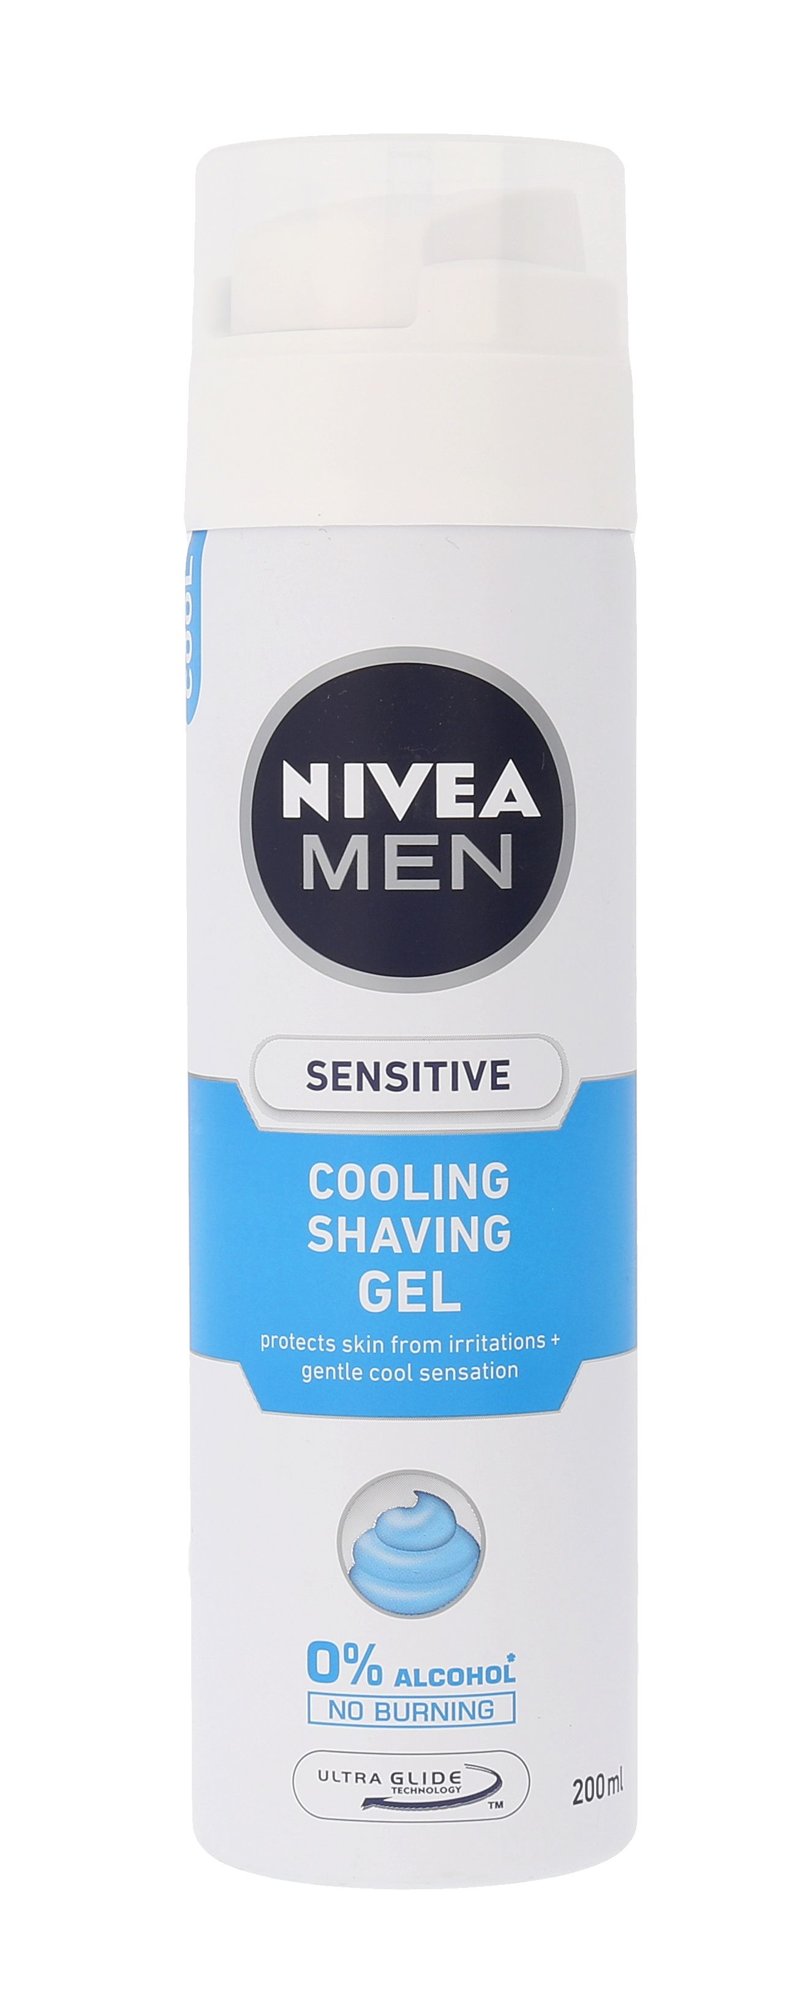 Nivea Men Sensitive Cooling Shaving Gel